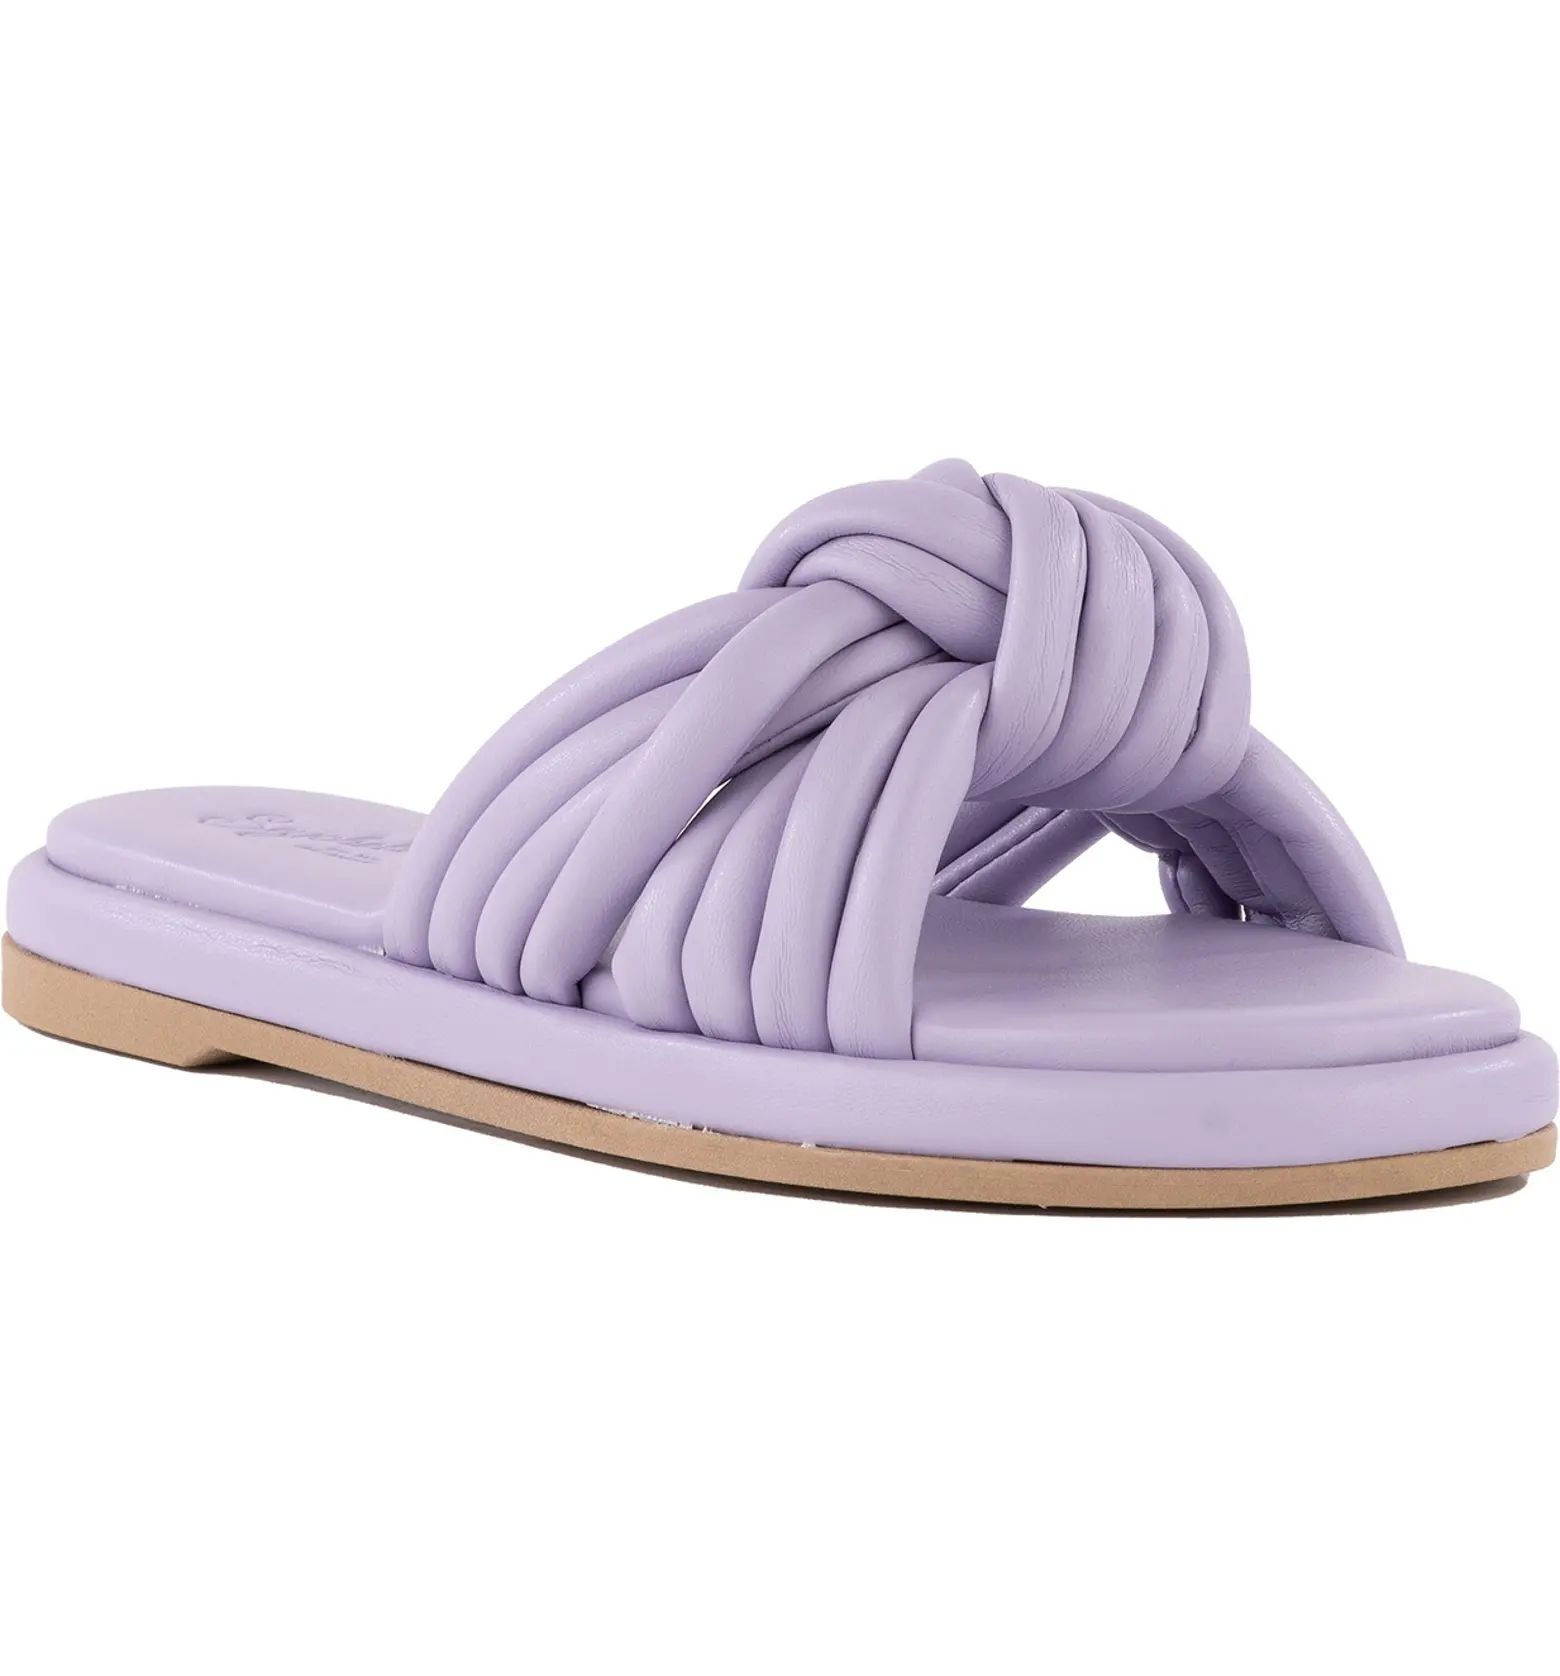 Simply the Best Slide Sandal (Women) | Nordstrom Rack